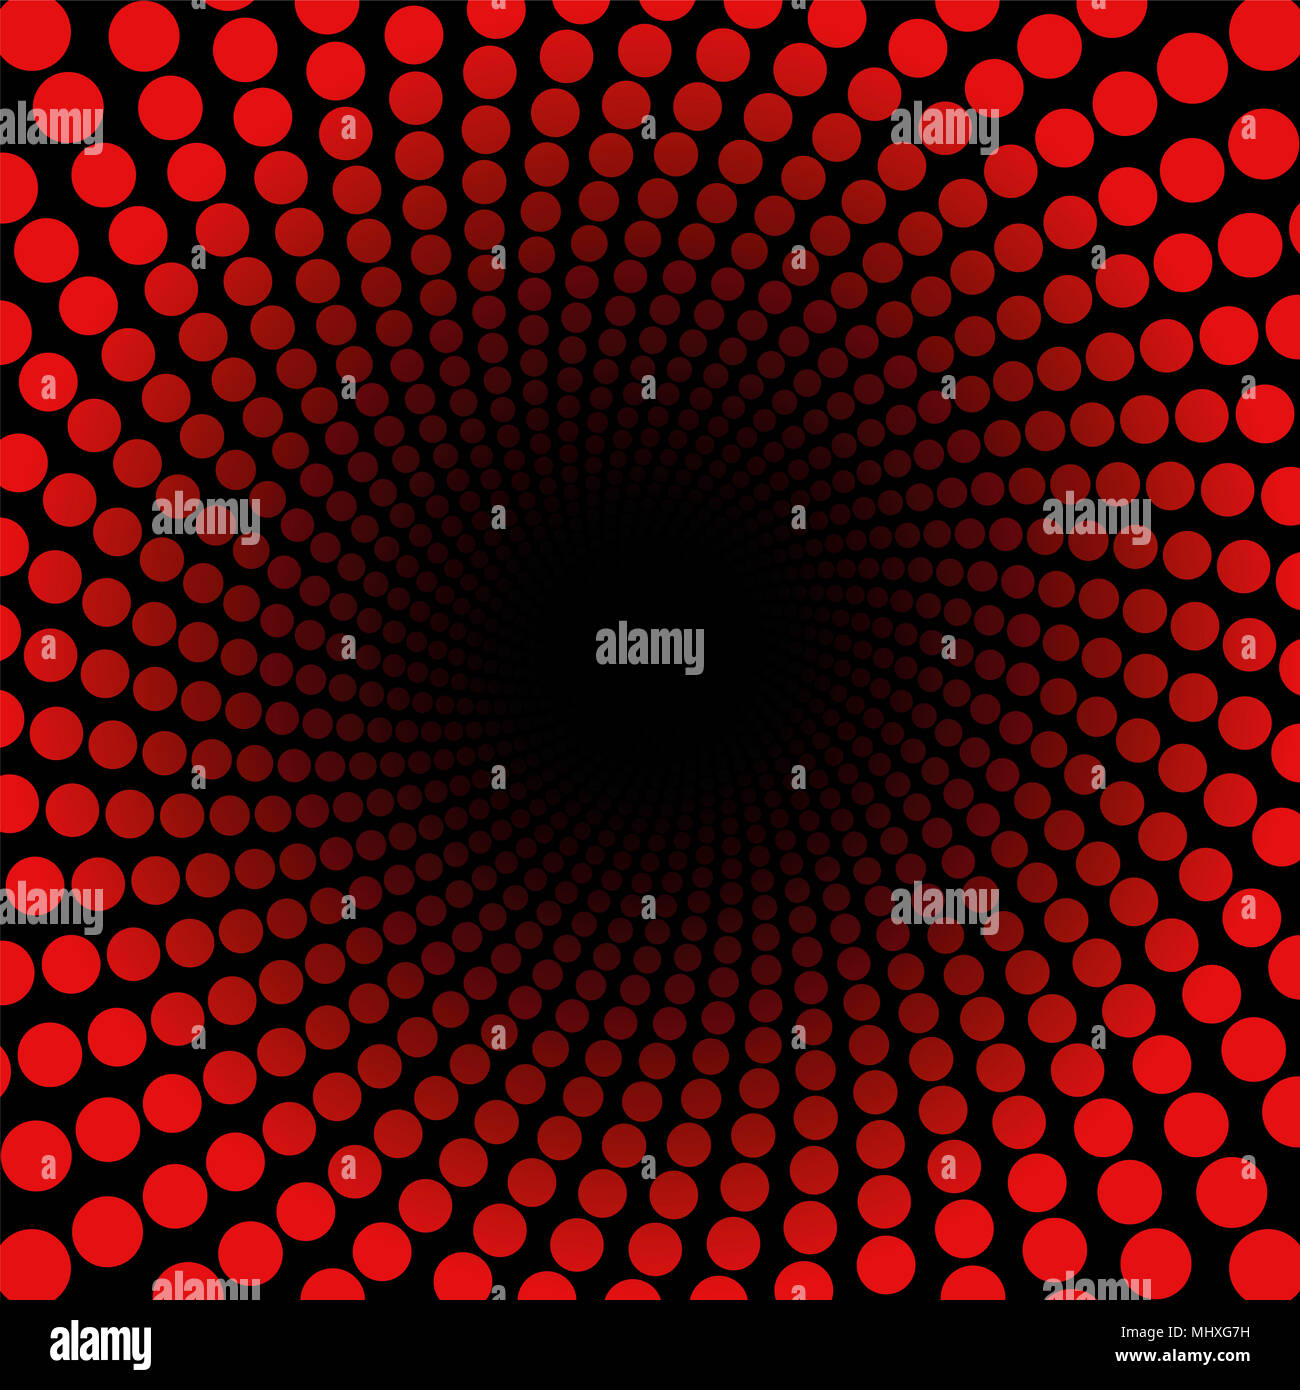 Spiralförmige Muster mit roten Punkten, Tunnel mit schwarzem Zentrum - twisted Rundschreiben fraktale Hintergrundbild - kraftvoll, dynamisch, hypnotisch, psychedel Stockfoto